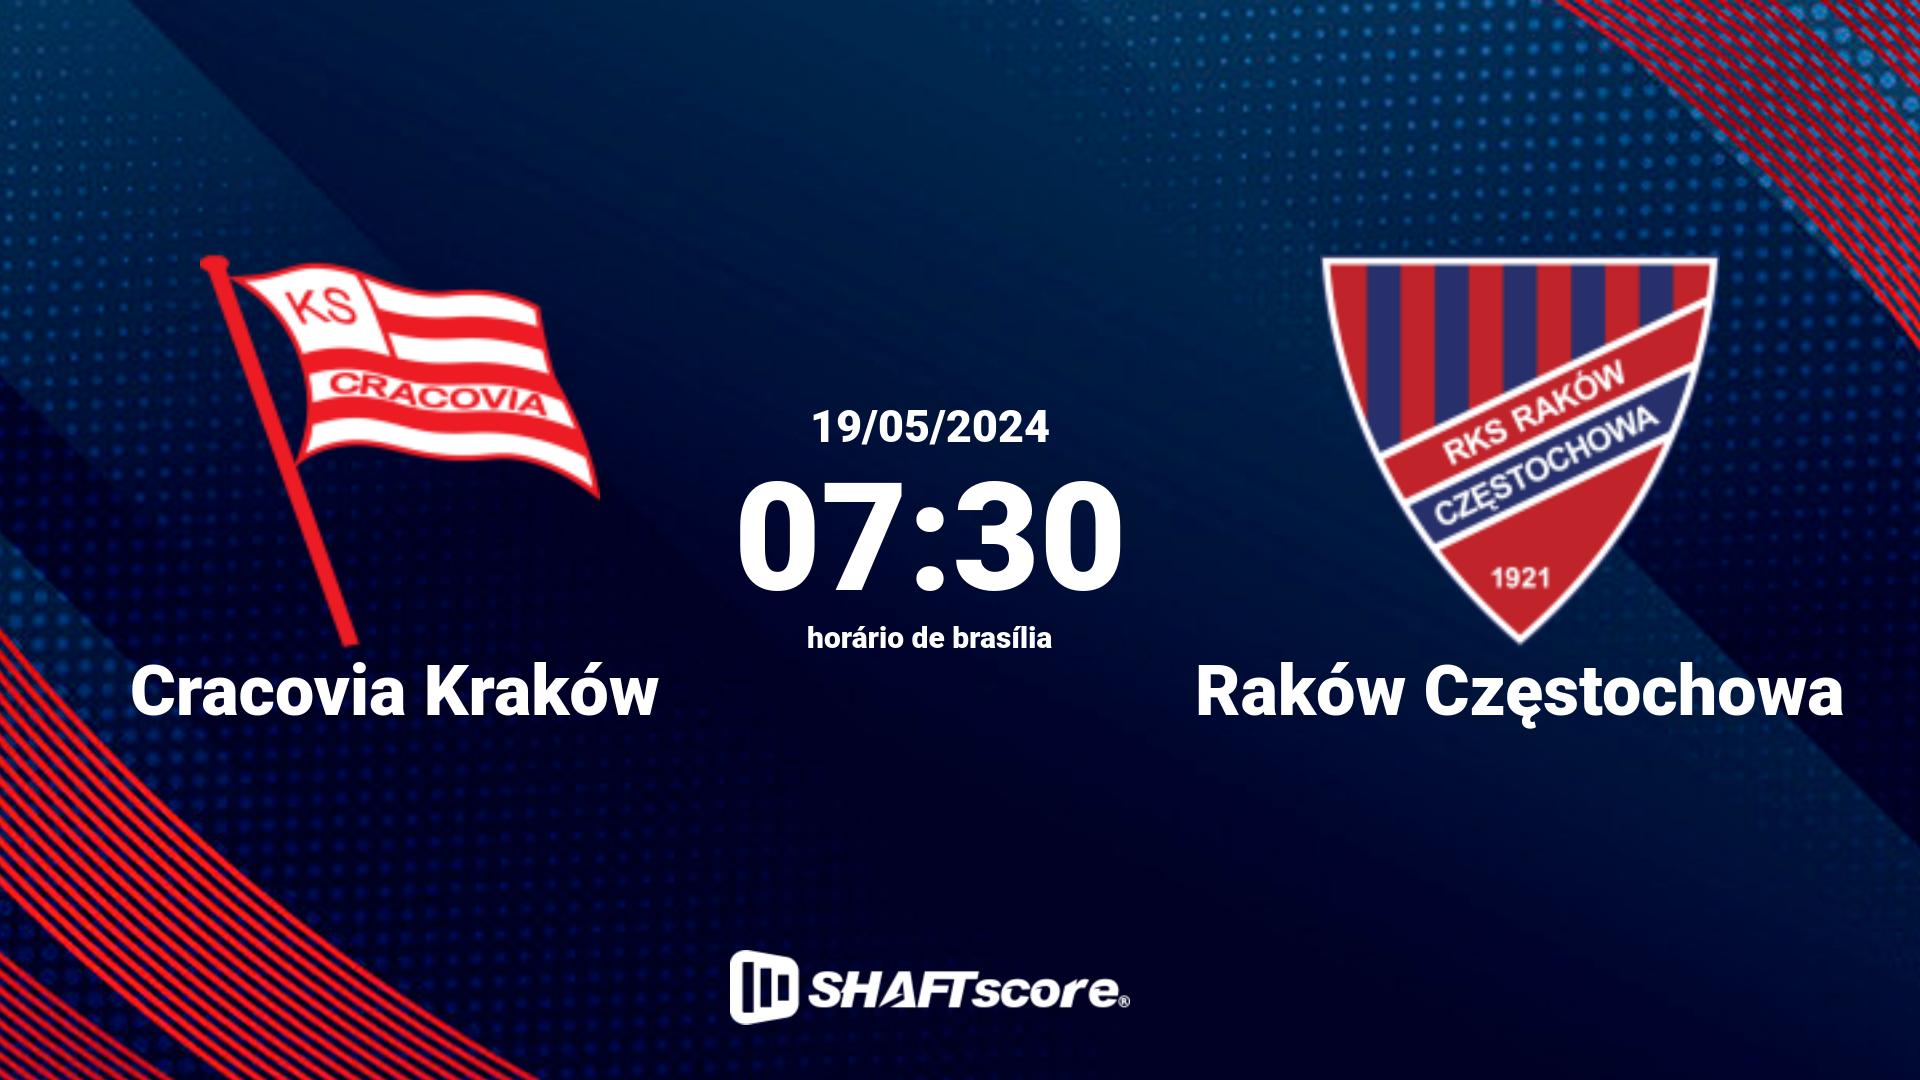 Estatísticas do jogo Cracovia Kraków vs Raków Częstochowa 19.05 07:30